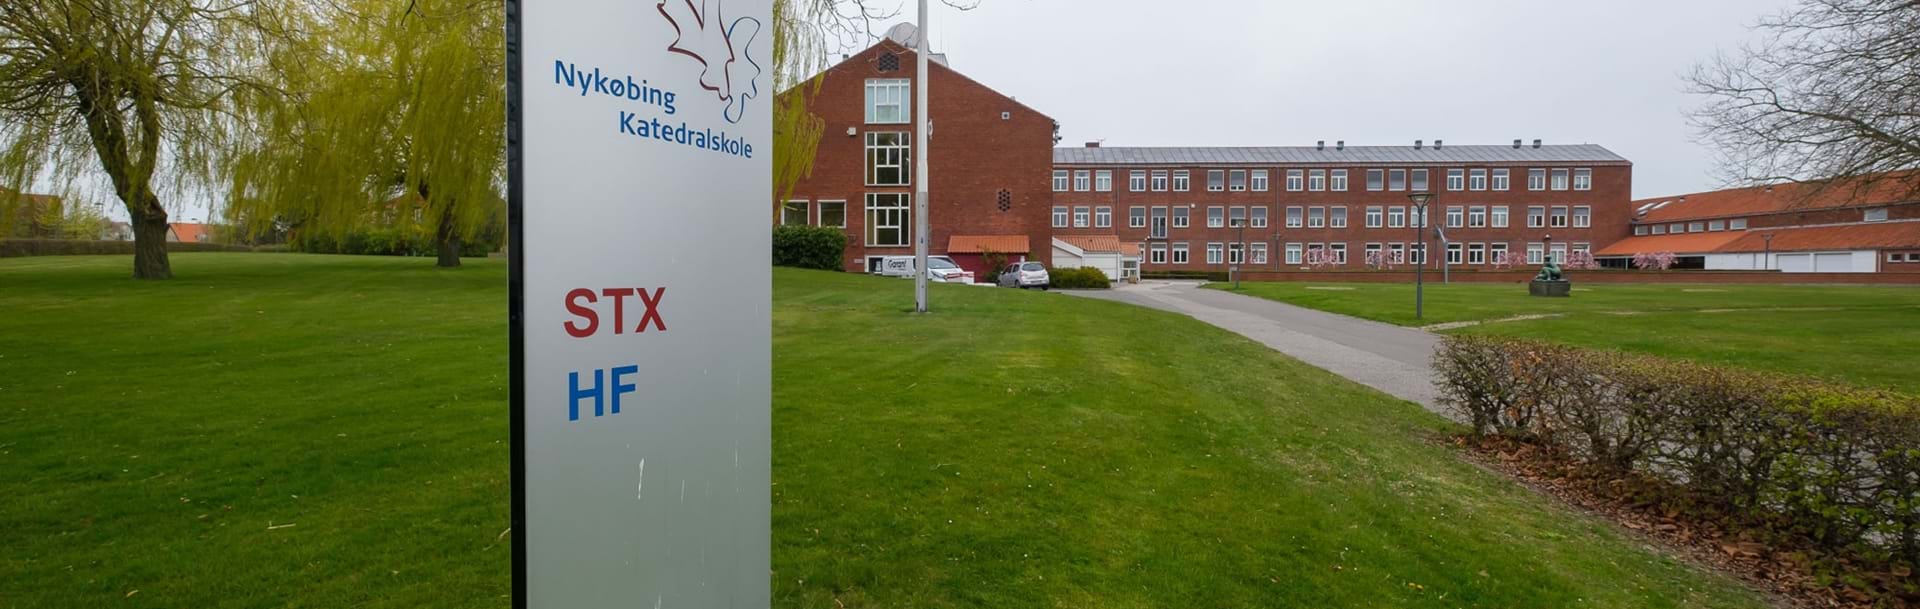 Skilt hvorpå der står Nykøbing Katedralskole STX og HF. I baggrunden skolens bygninger.